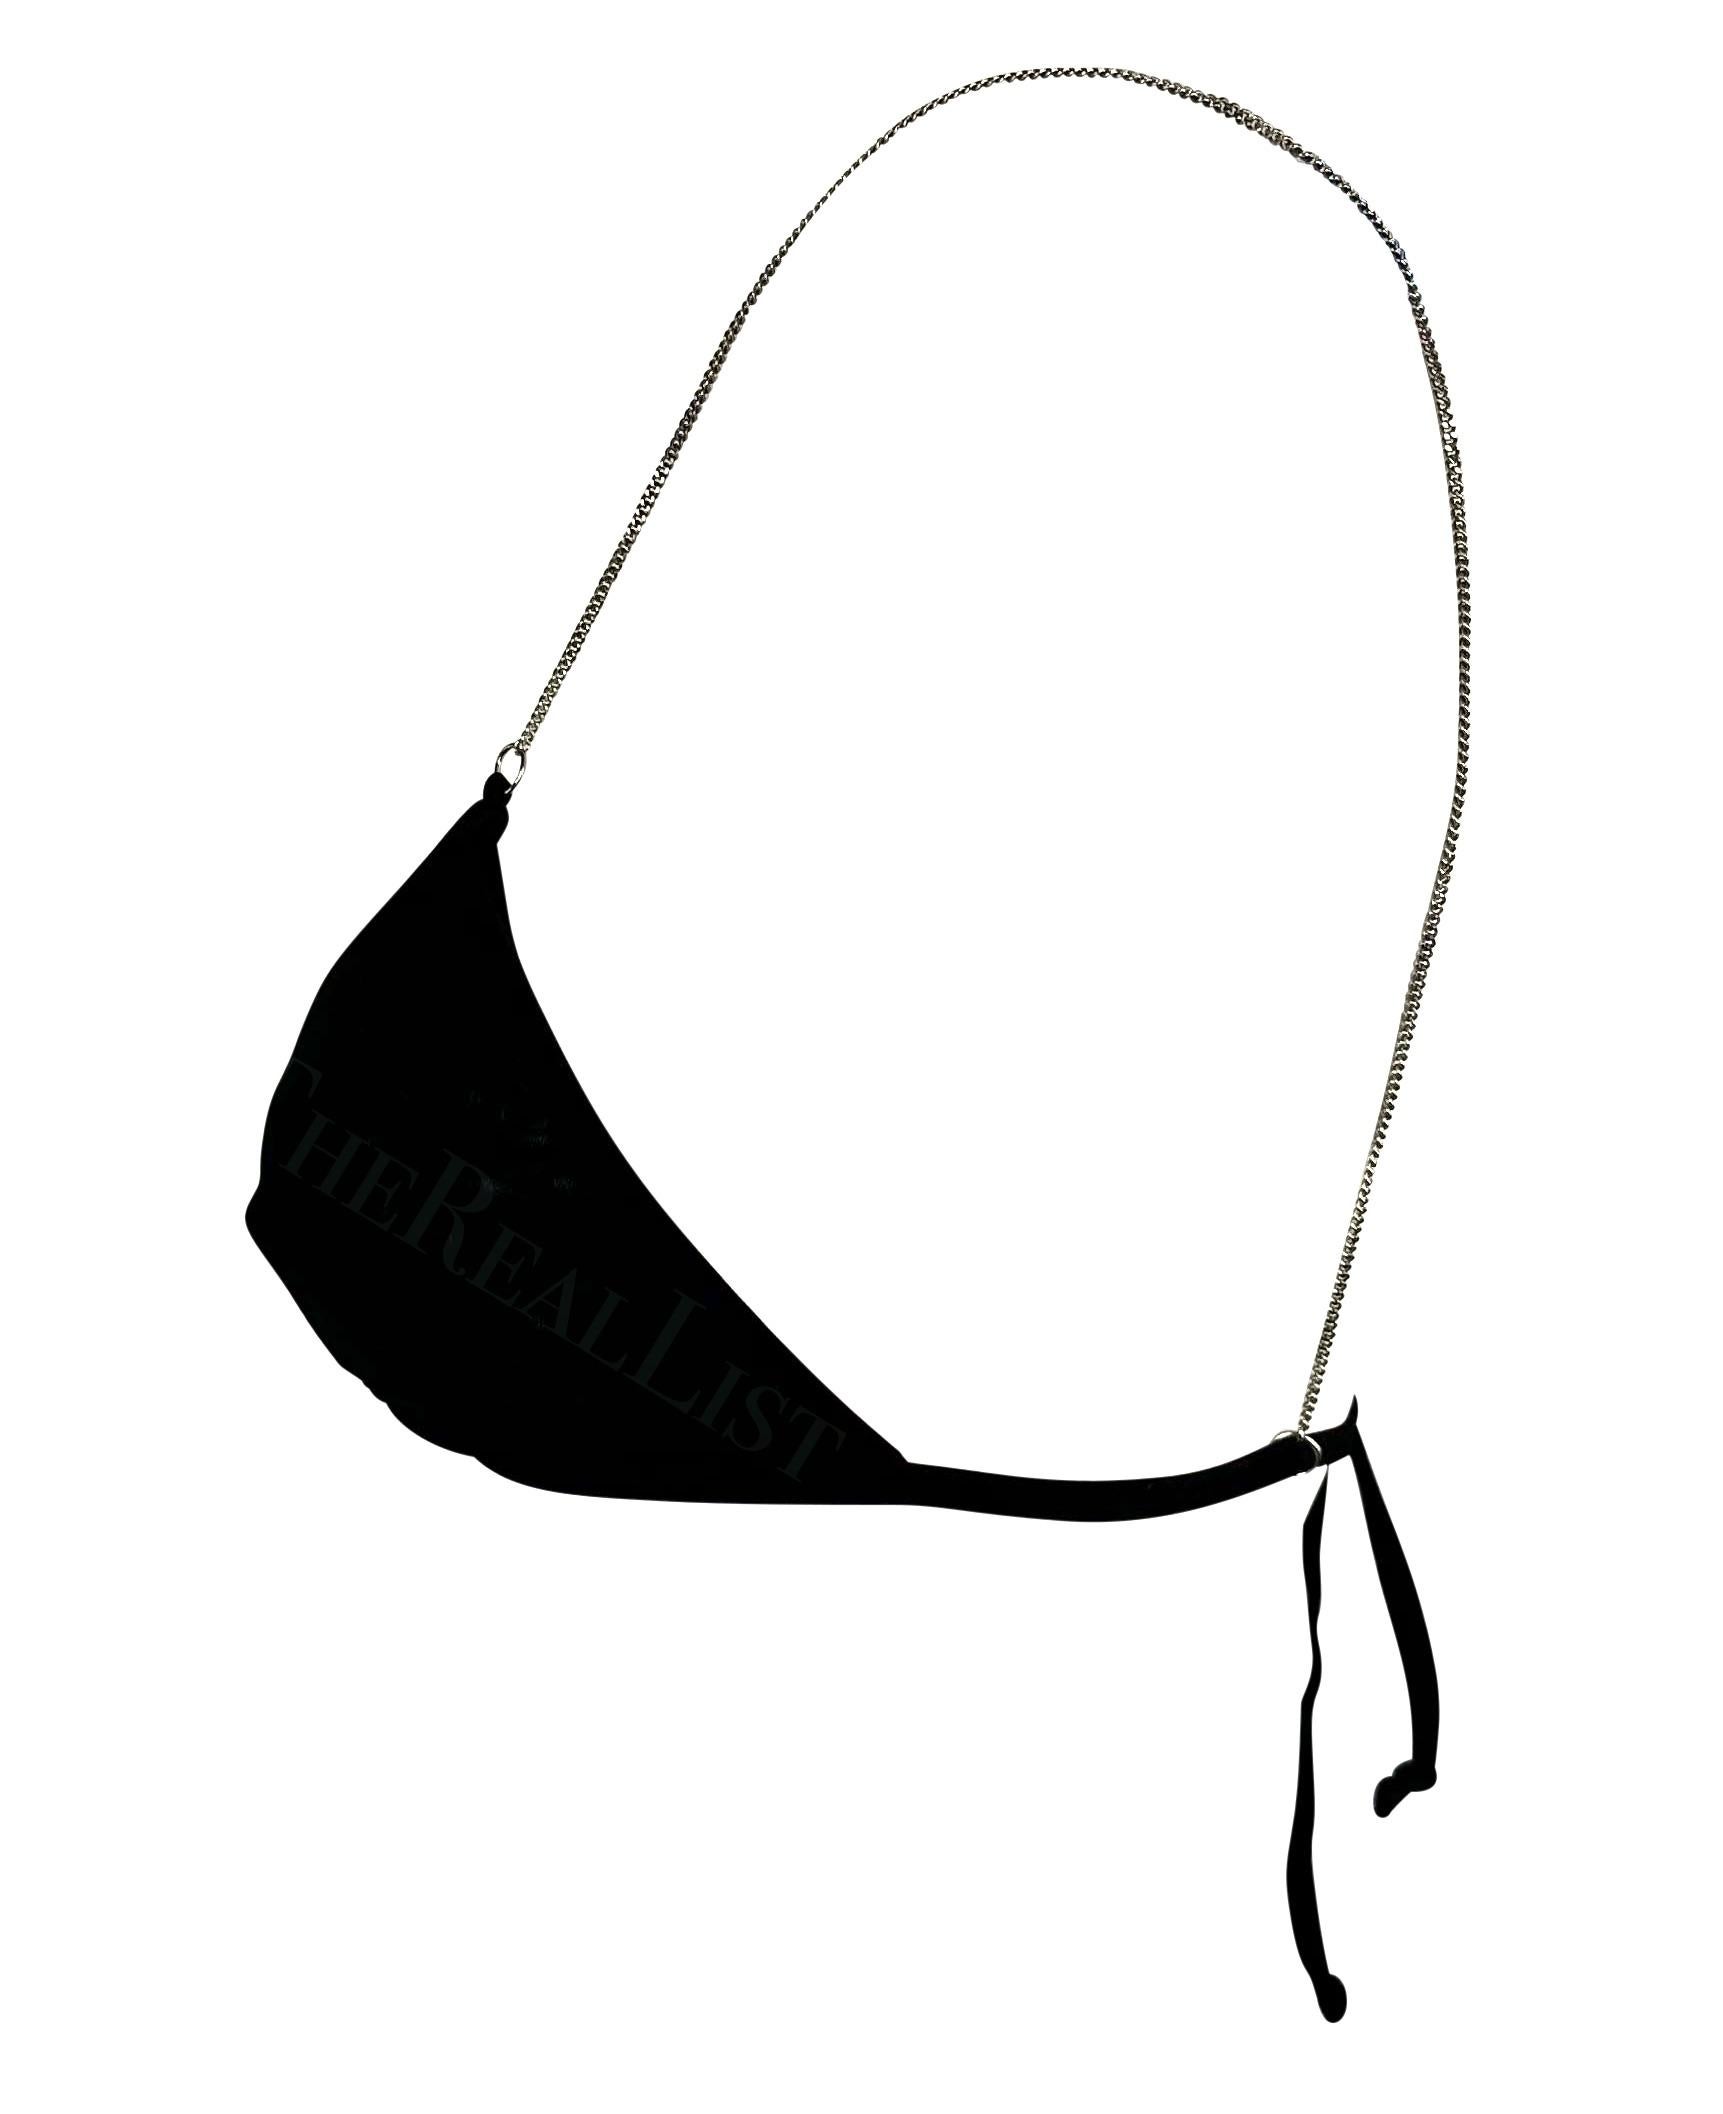 Voici une fabuleuse bralette Dolce and Gabbana en maille noire. Datant du début des années 2000, ce haut de bikini en maille noire transparente est complété par des bretelles en chaîne de couleur argentée. Portée avec un ensemble ou un bikini, cette